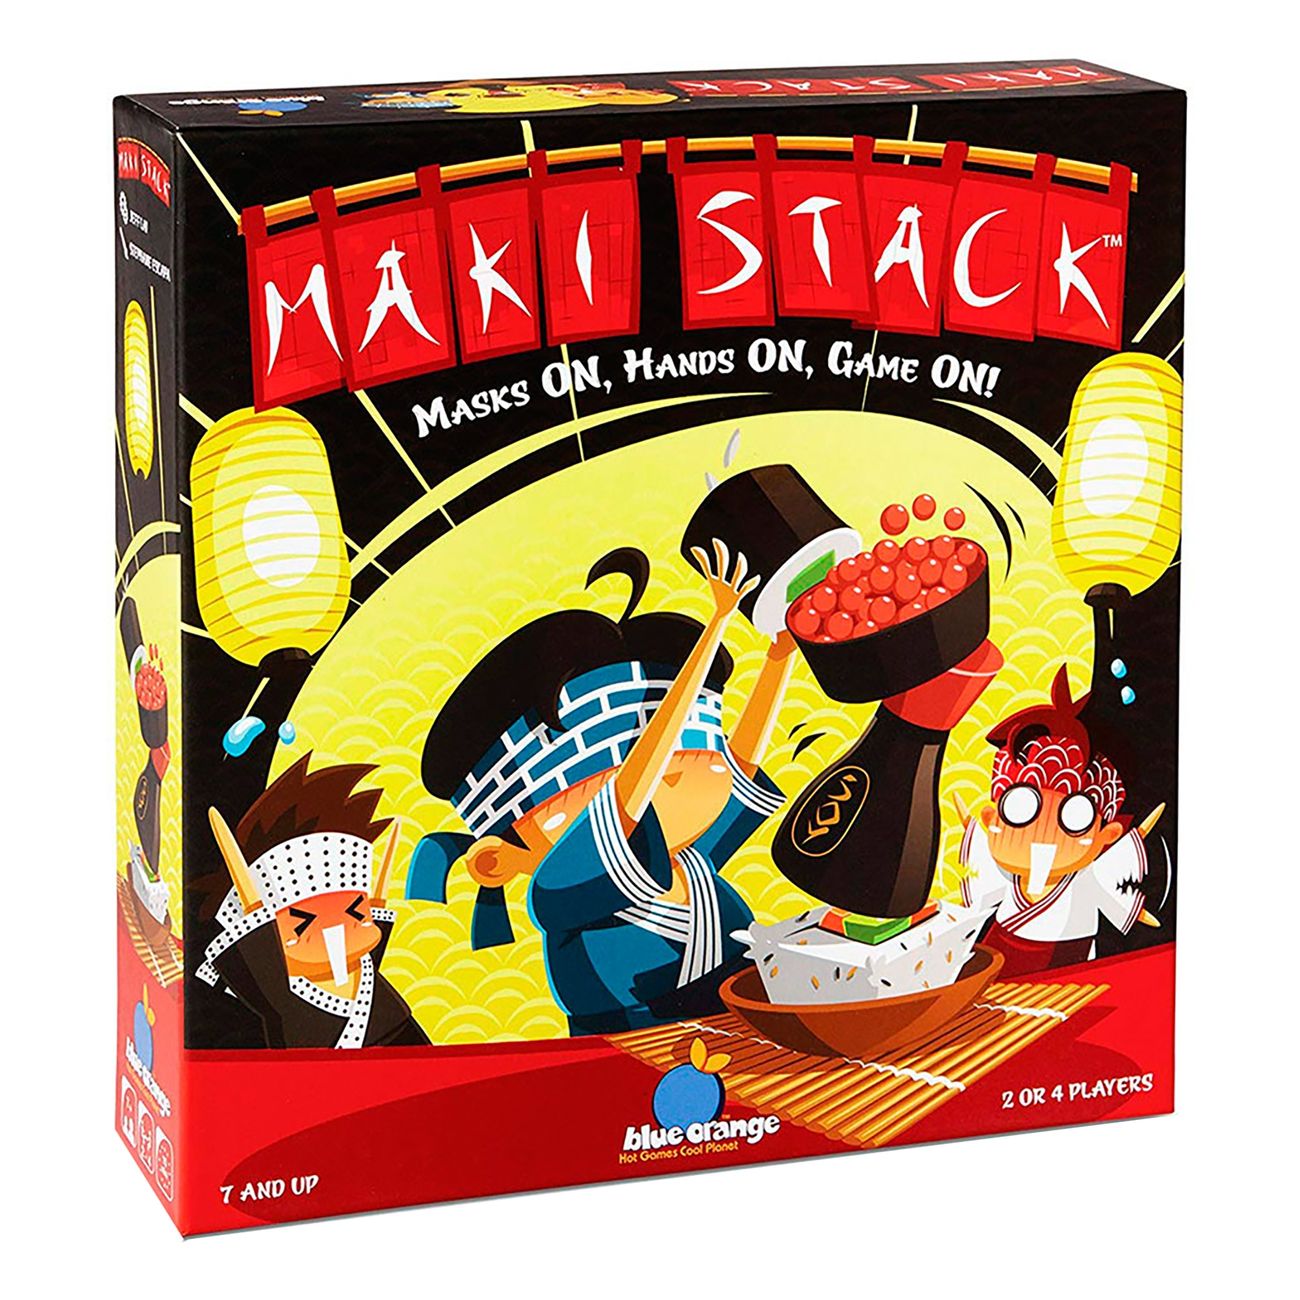 maki-stack-spel-90793-1